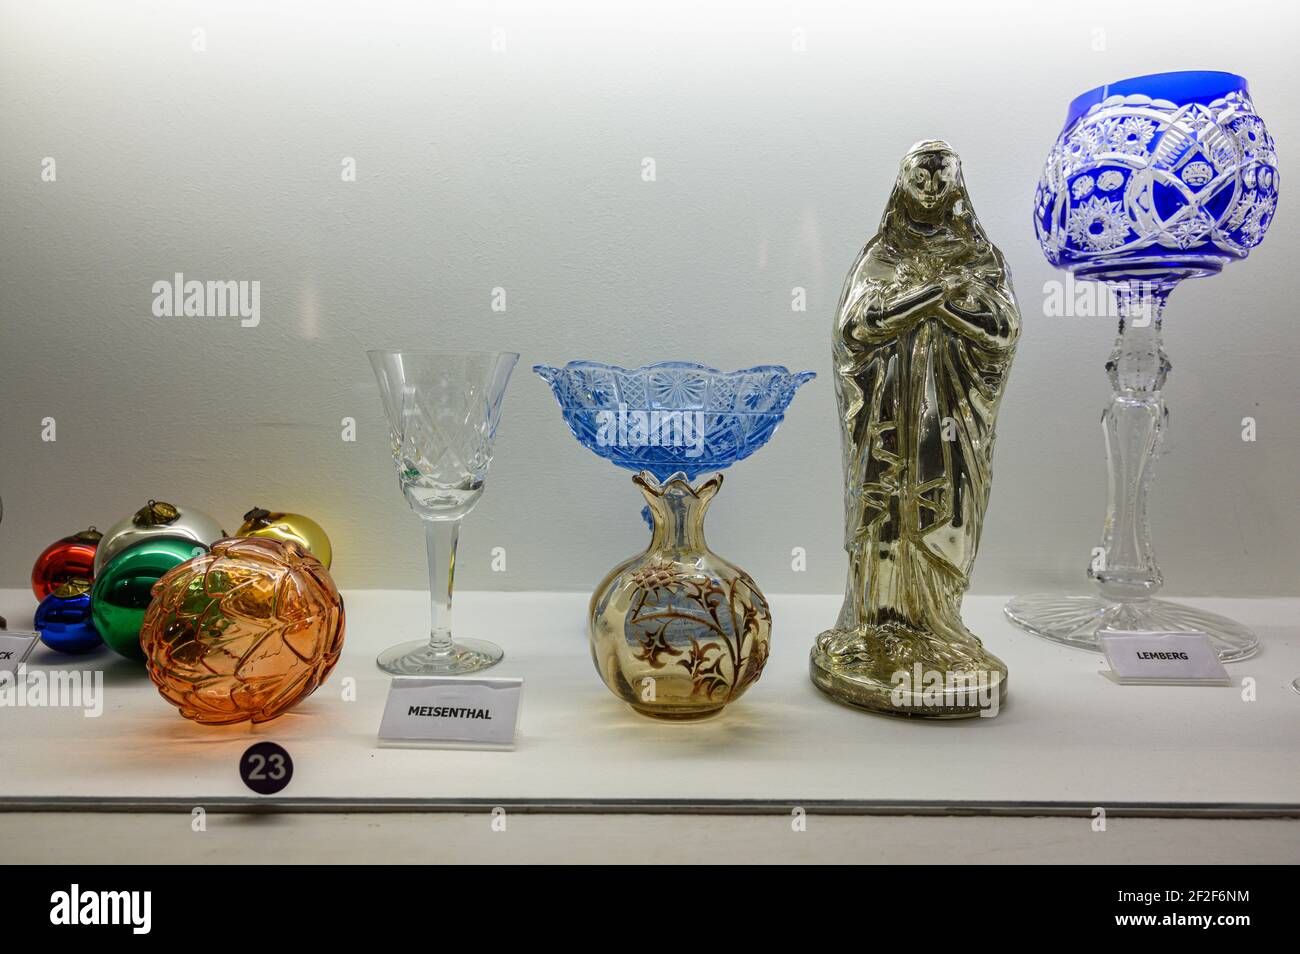 Show-case con exhibiciones de vidrio hechas a mano. Decoración de cristal, cuenco de cristal y escultura. Meisenthal vidrieras, Moselle, Francia. Foto de stock